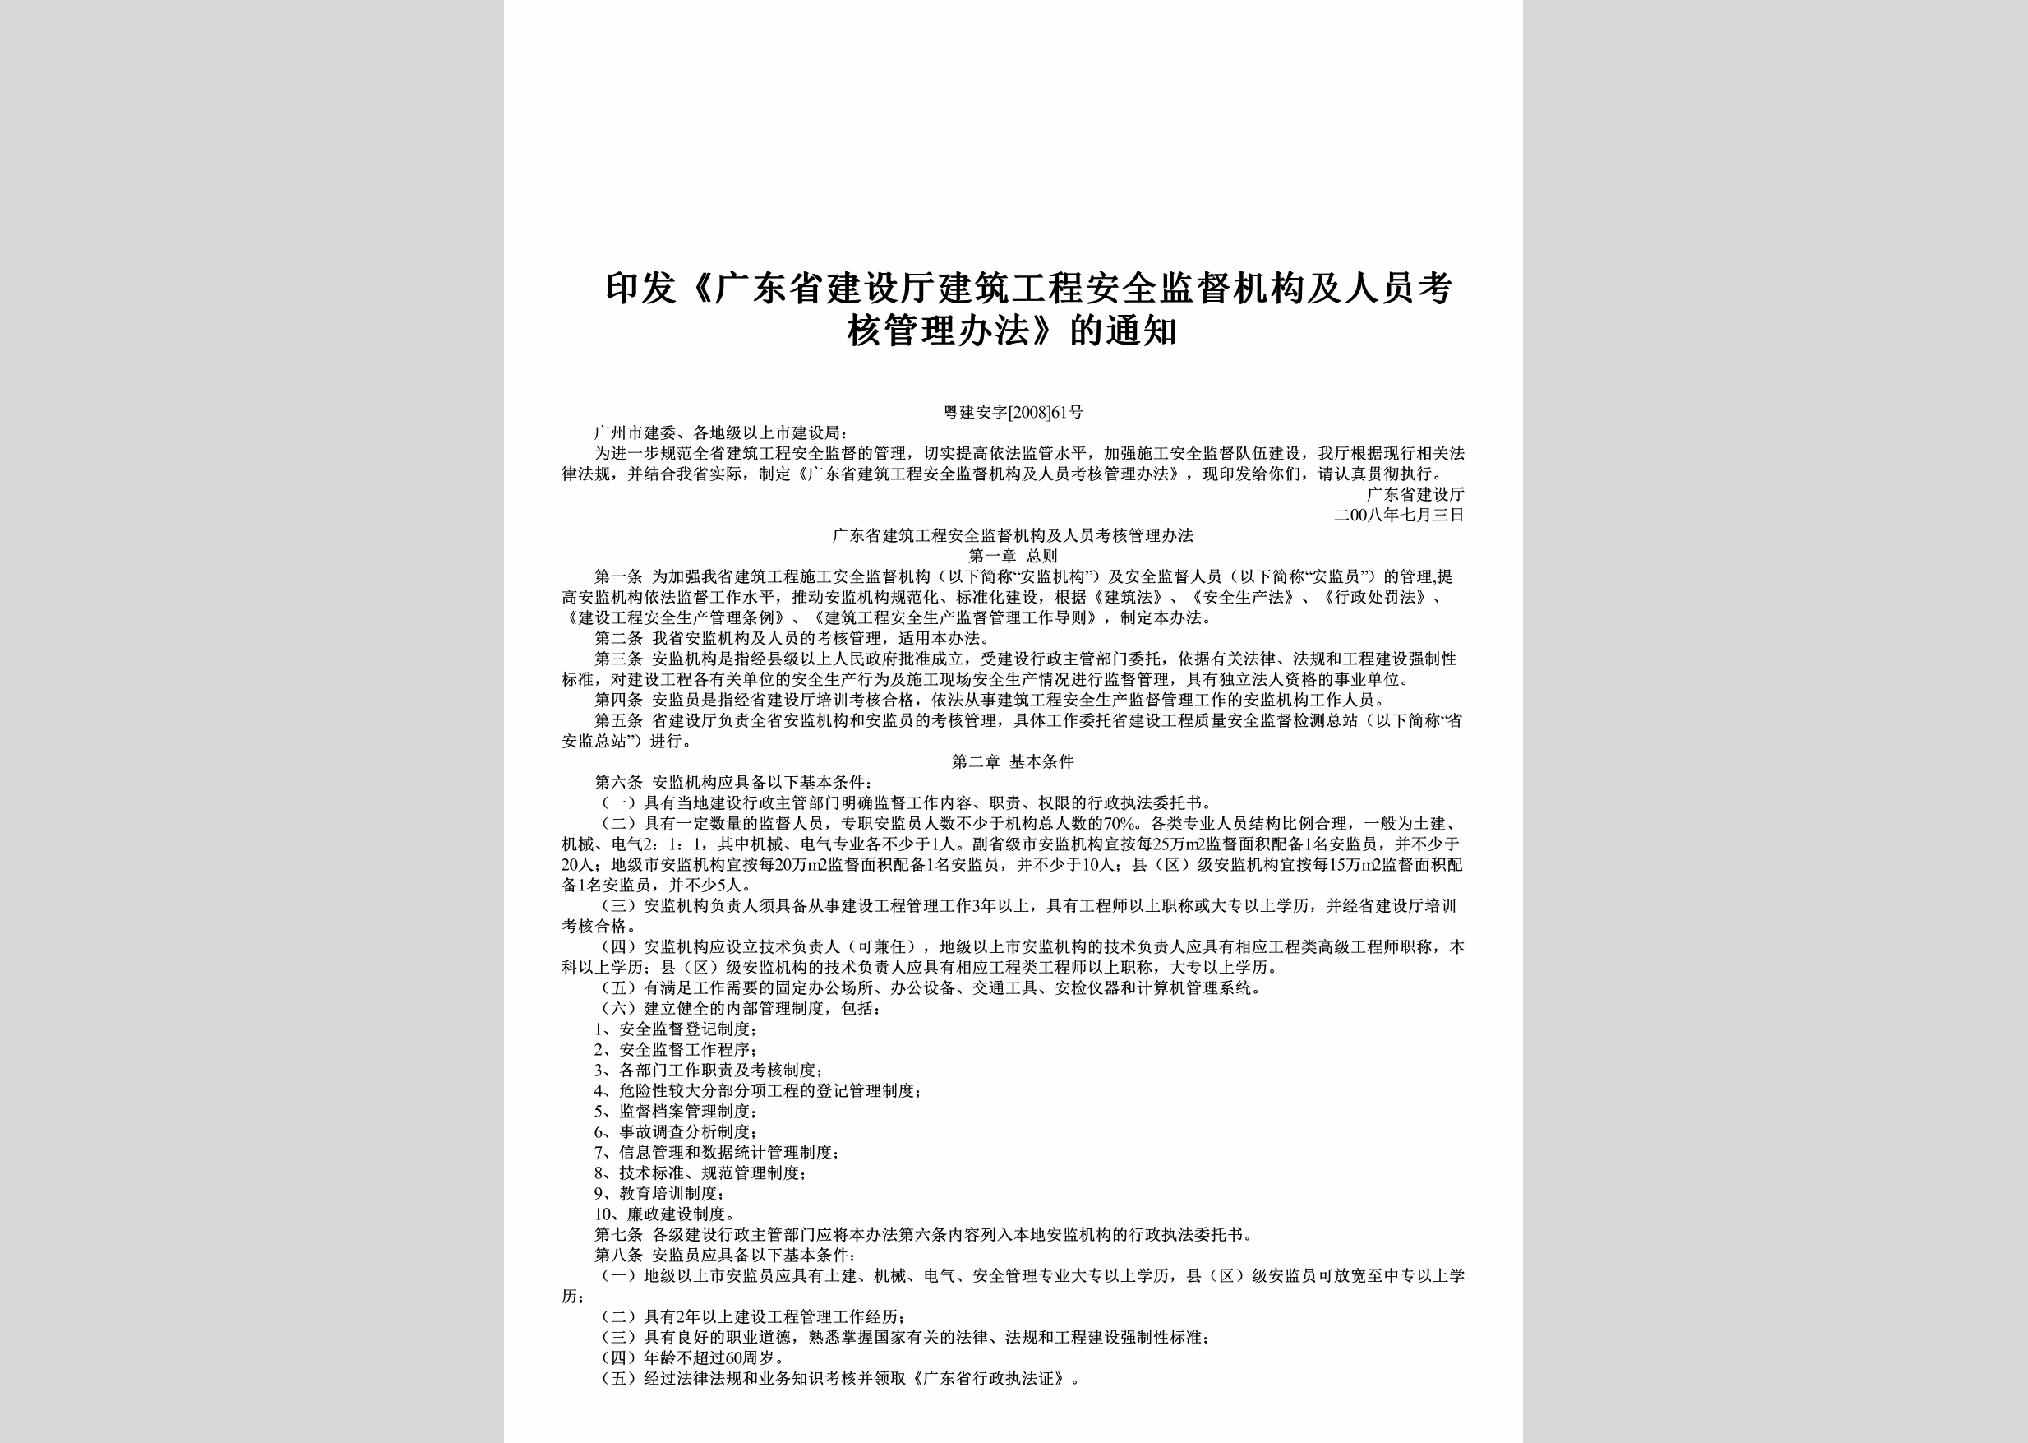 粤建安字[2008]61号：印发《广东省建设厅建筑工程安全监督机构及人员考核管理办法》的通知